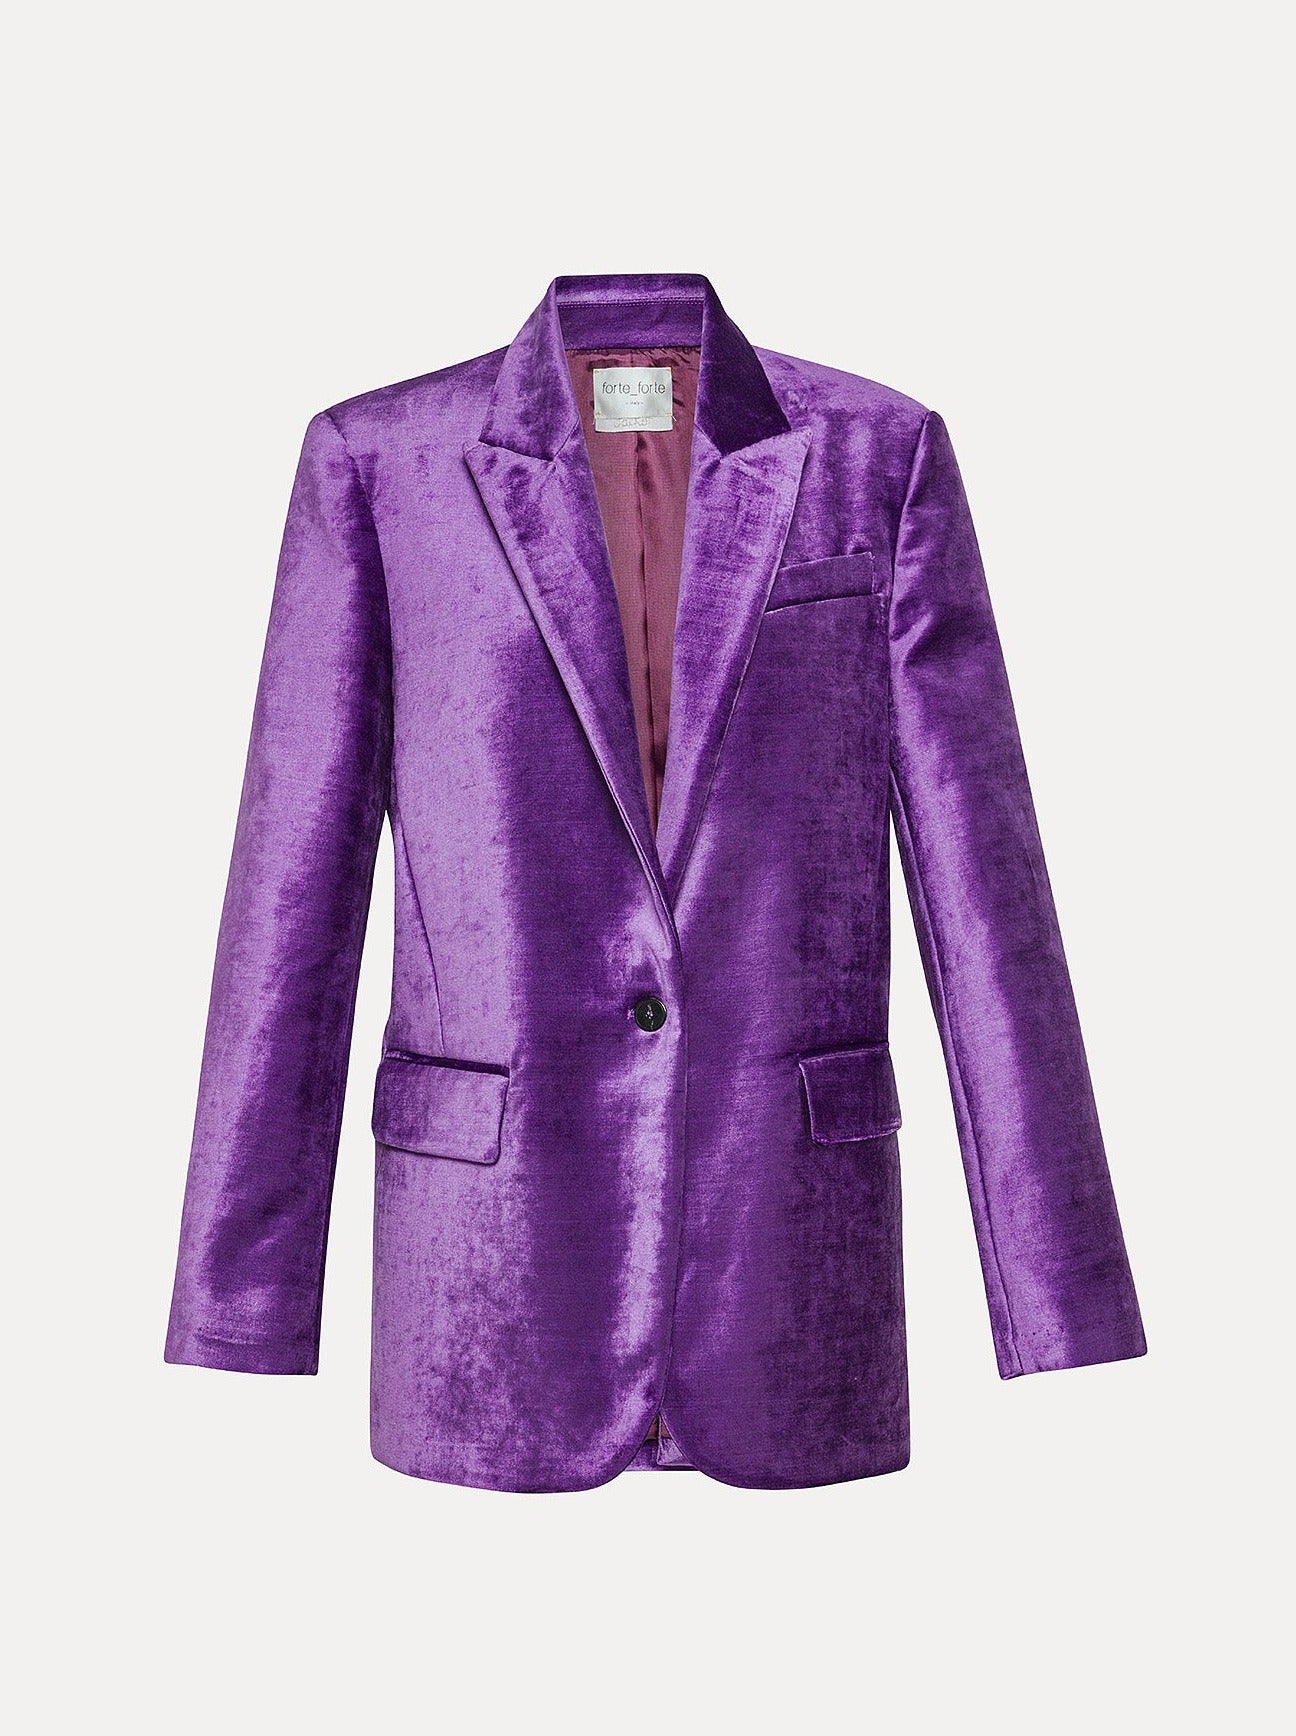 Cotton viscose velvet jacket, violet